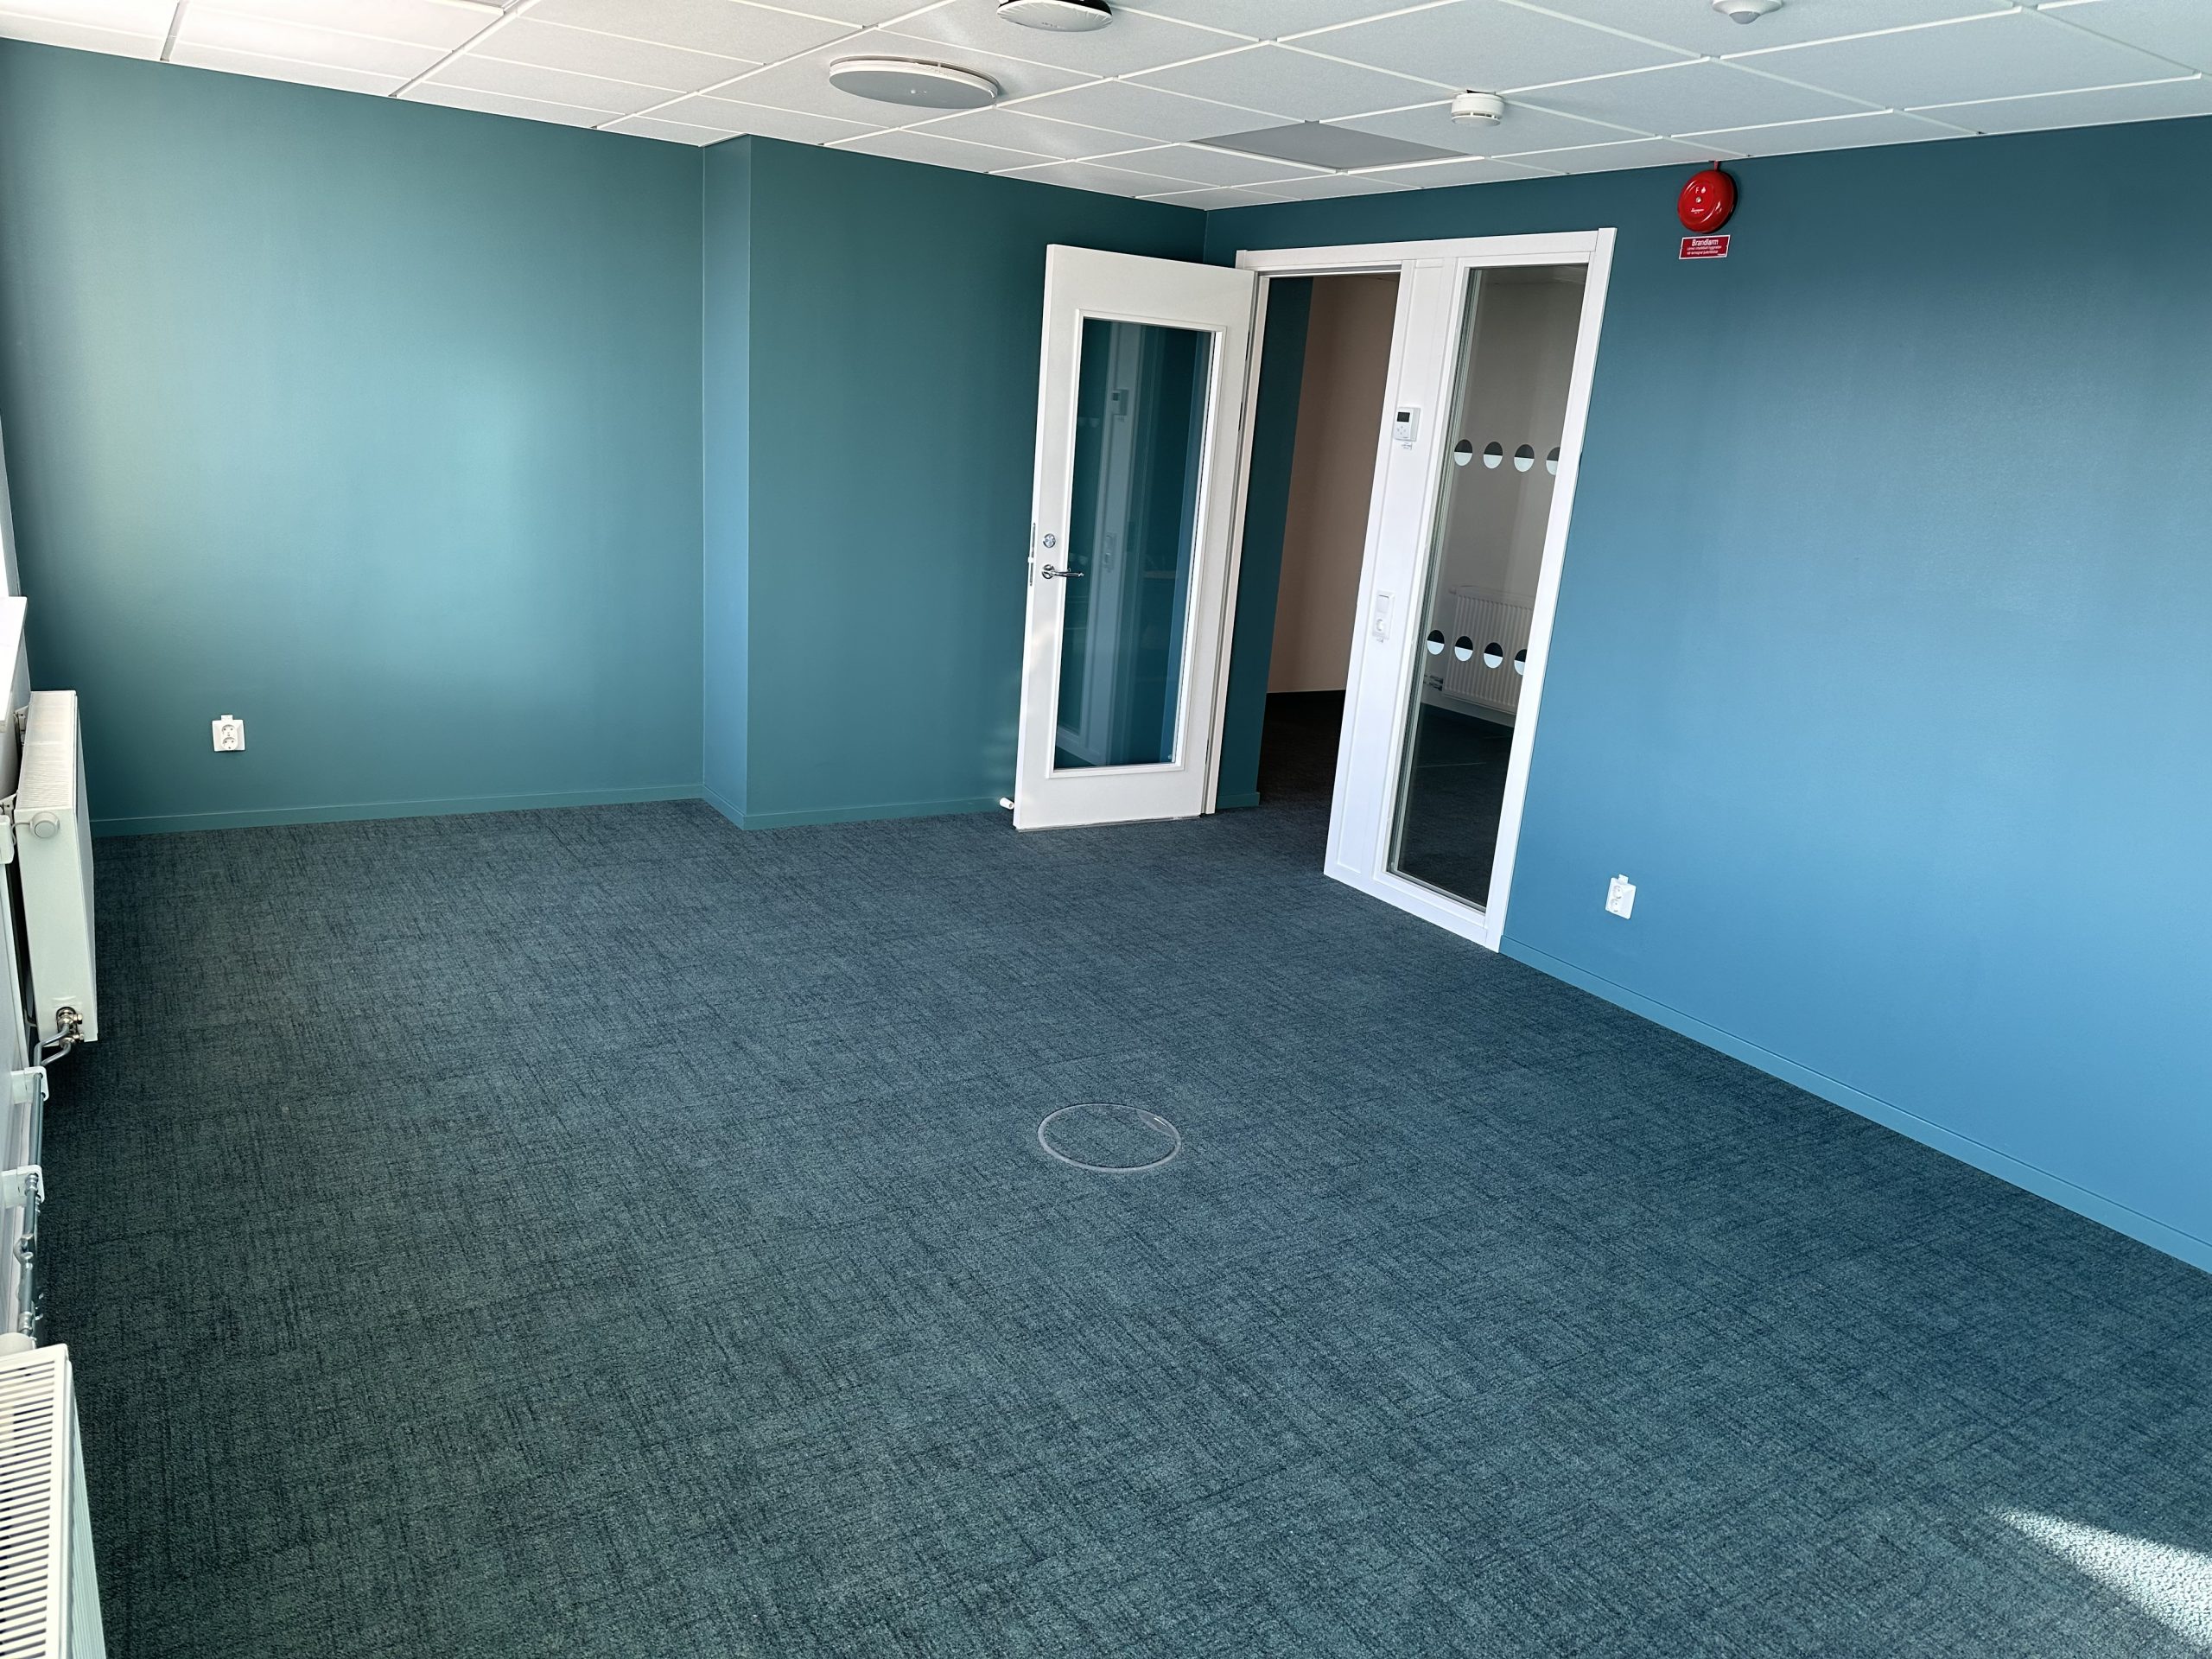 Ett av rummen med nya golvmattor i grått och härlig grön/blå färg på väggarna